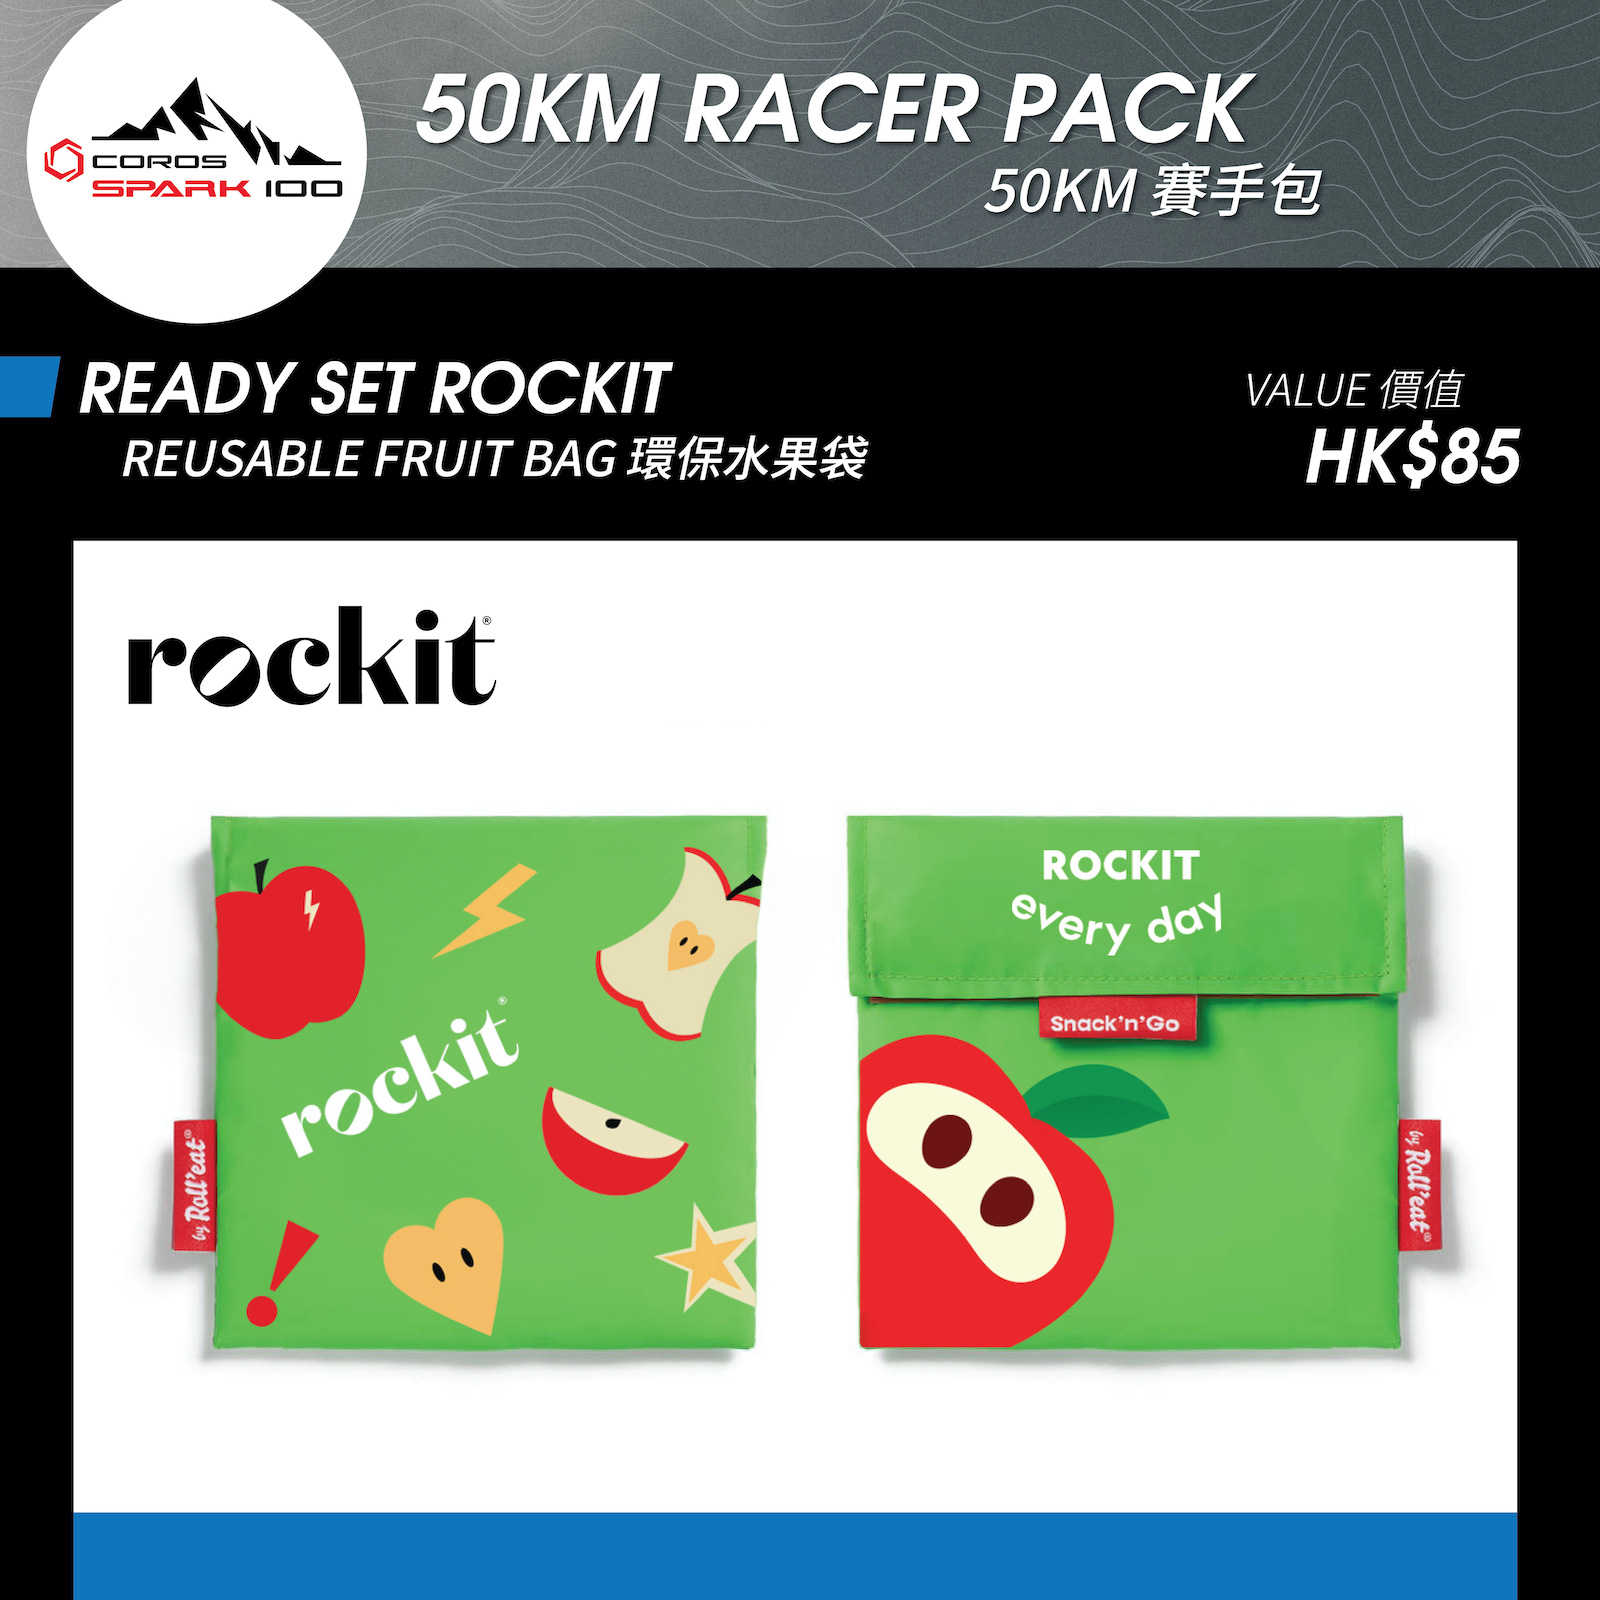 READY SET ROCKIT - 環保水果袋 (價值 HK$85)